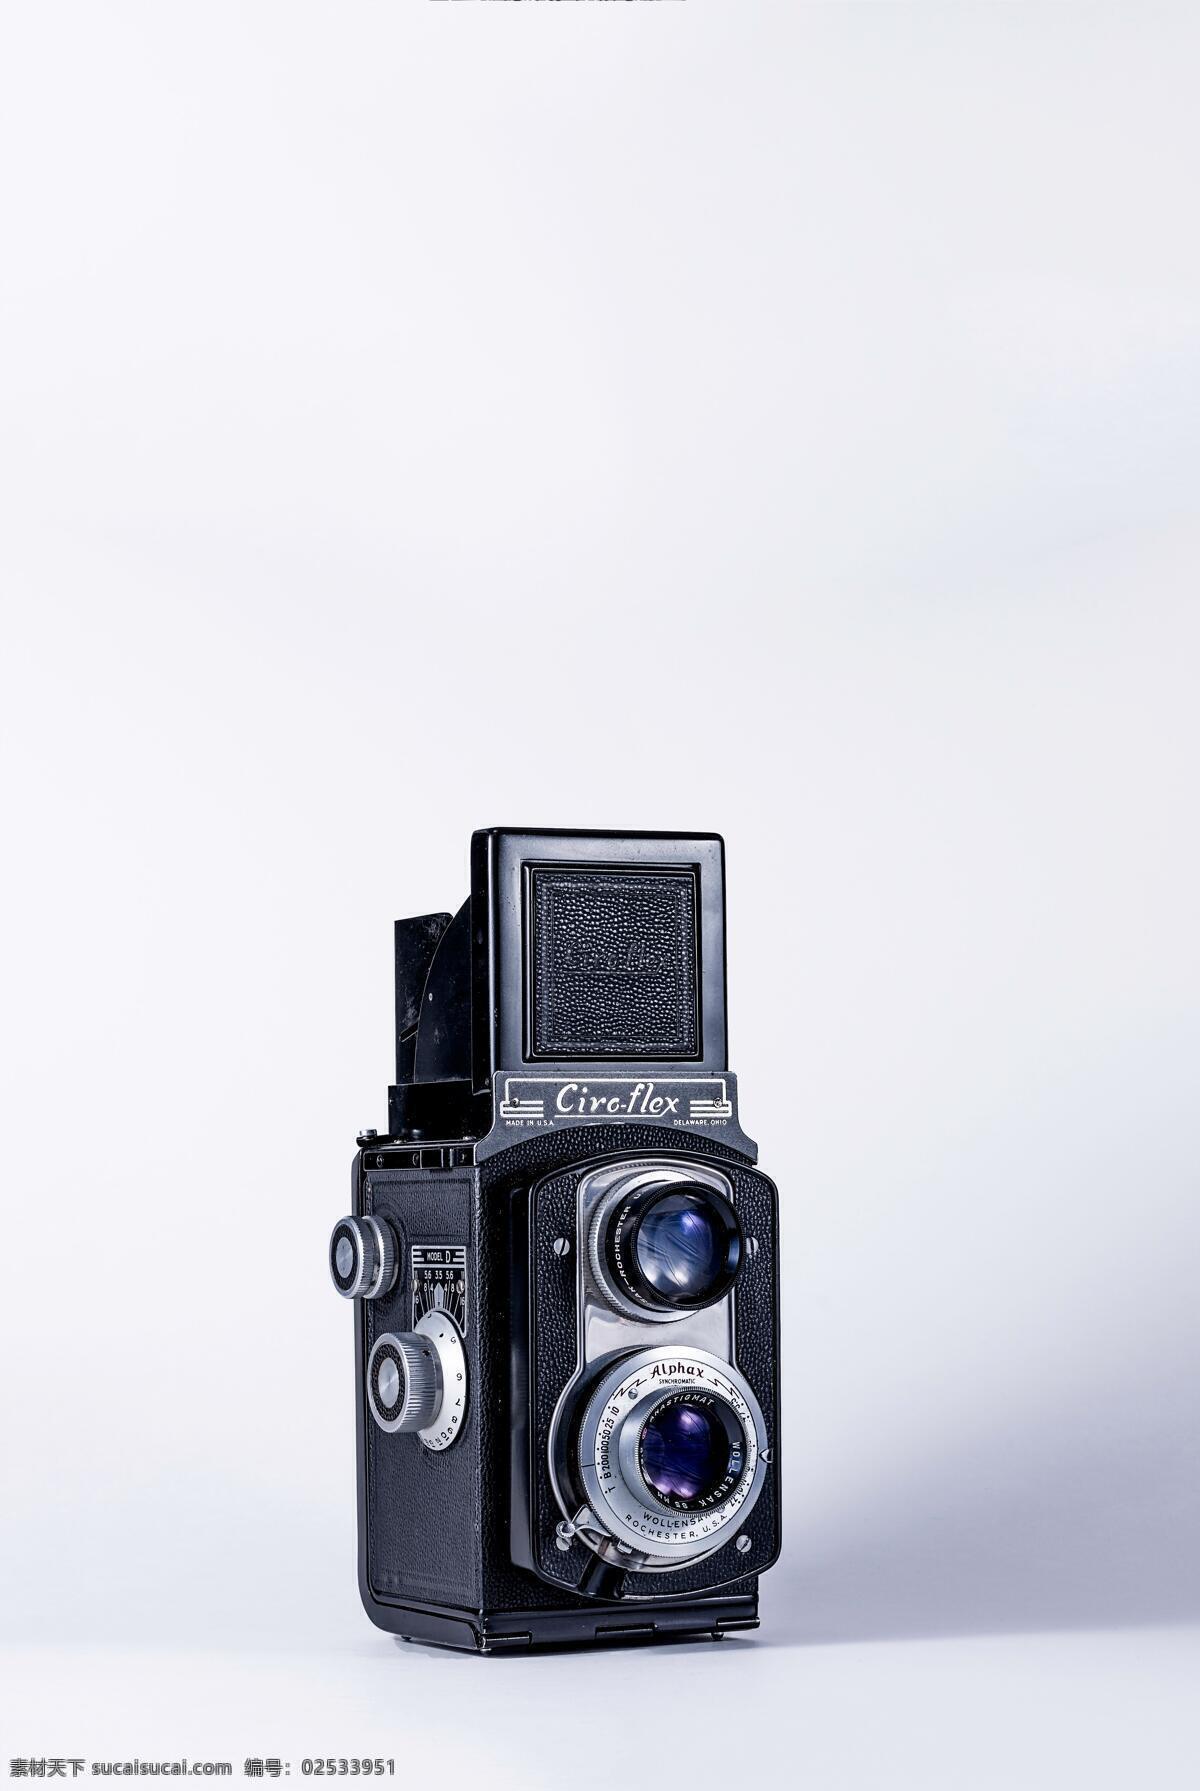 古董相机 古董 相机 旧物 怀旧 情怀 镜头 老式相机 生活百科 生活素材